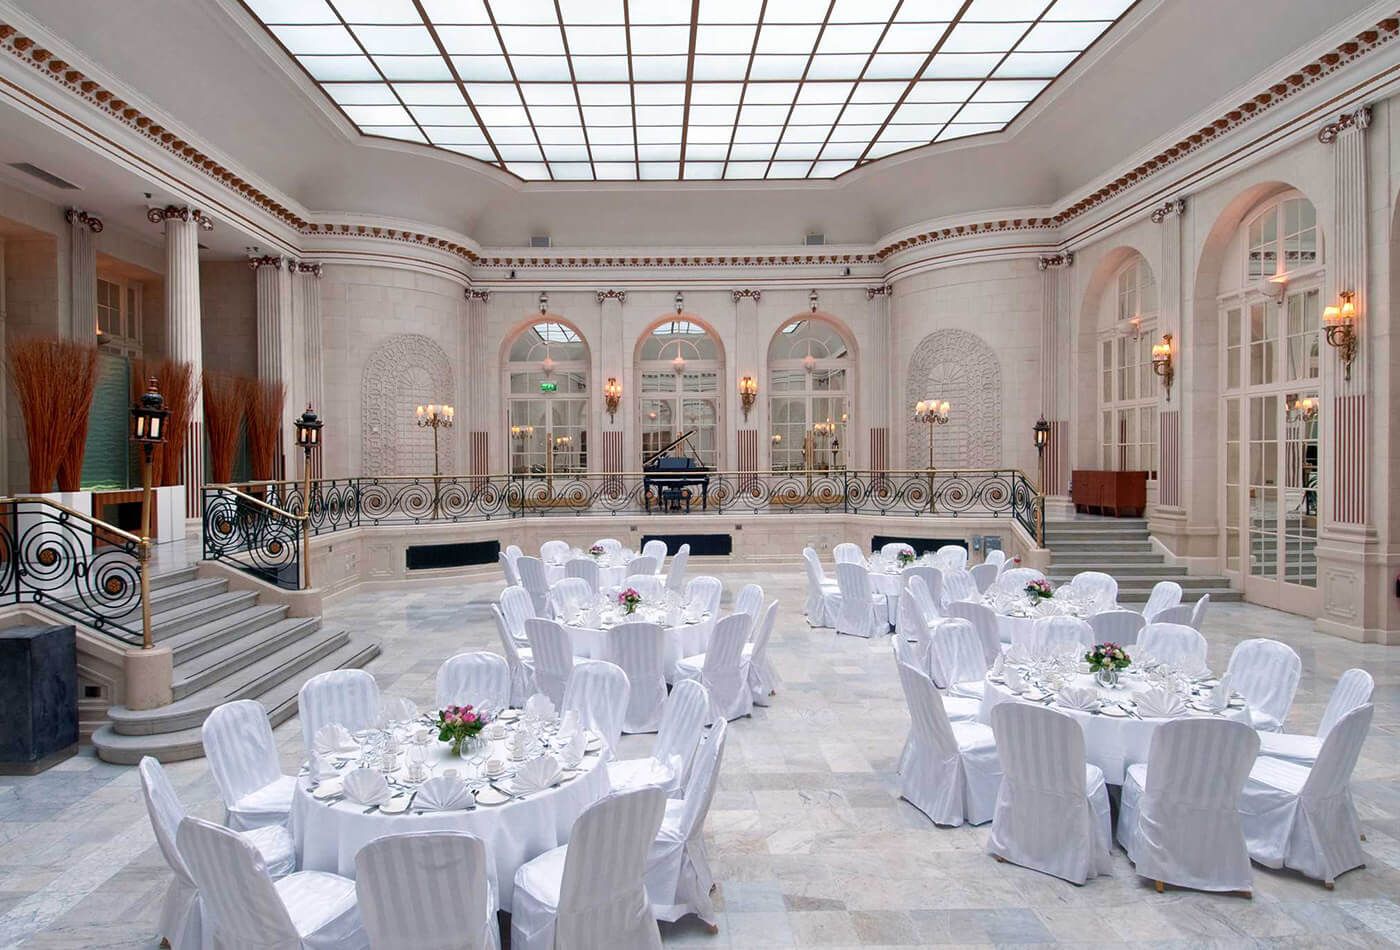 White wedding dinner in grand high ceiling room